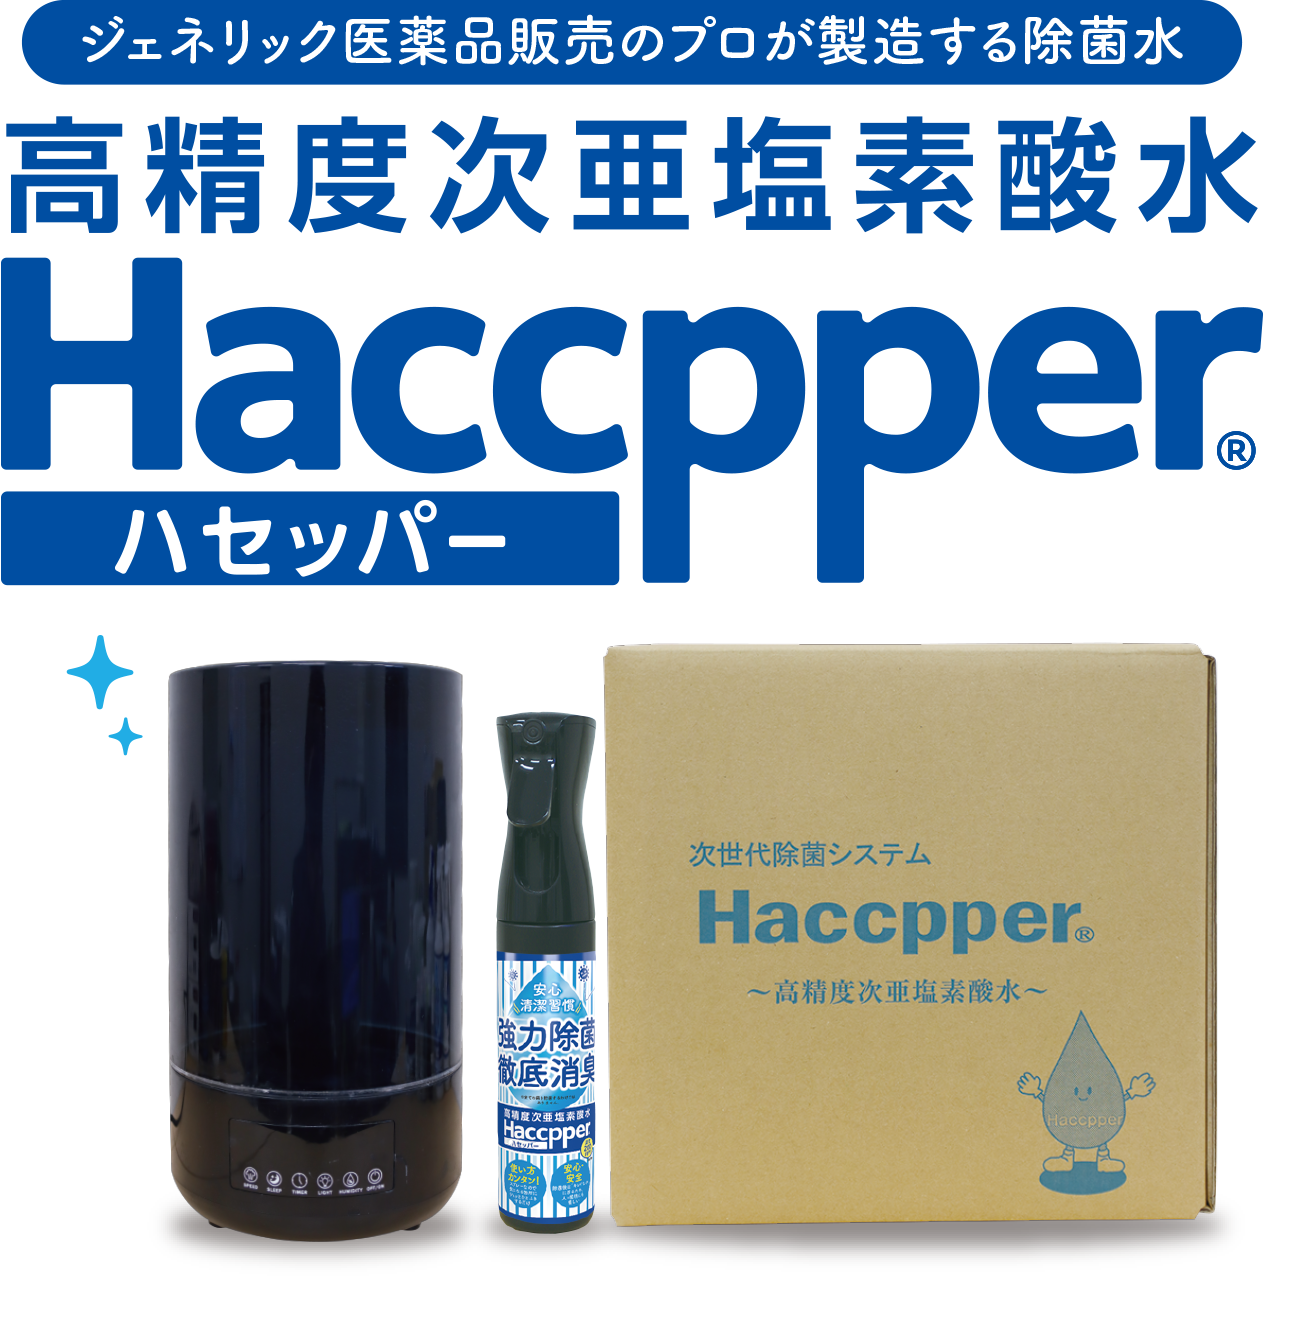 高精度次亜塩素酸水 Haccpper ハセッパー